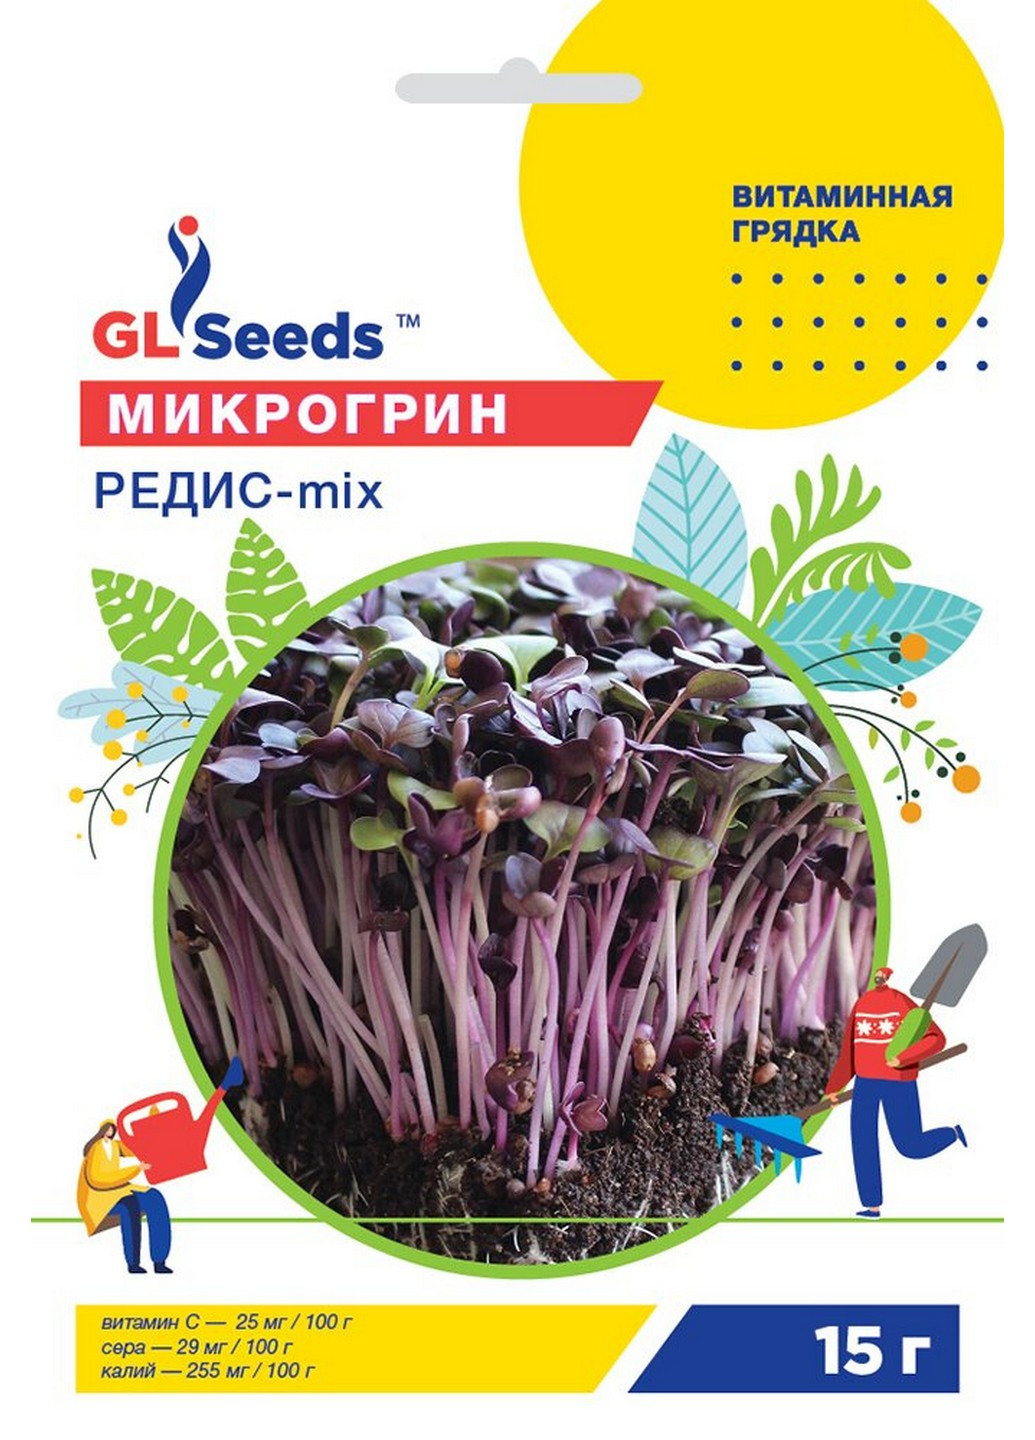 Микрозелень Редис микс 15 г GL Seeds (215484605)